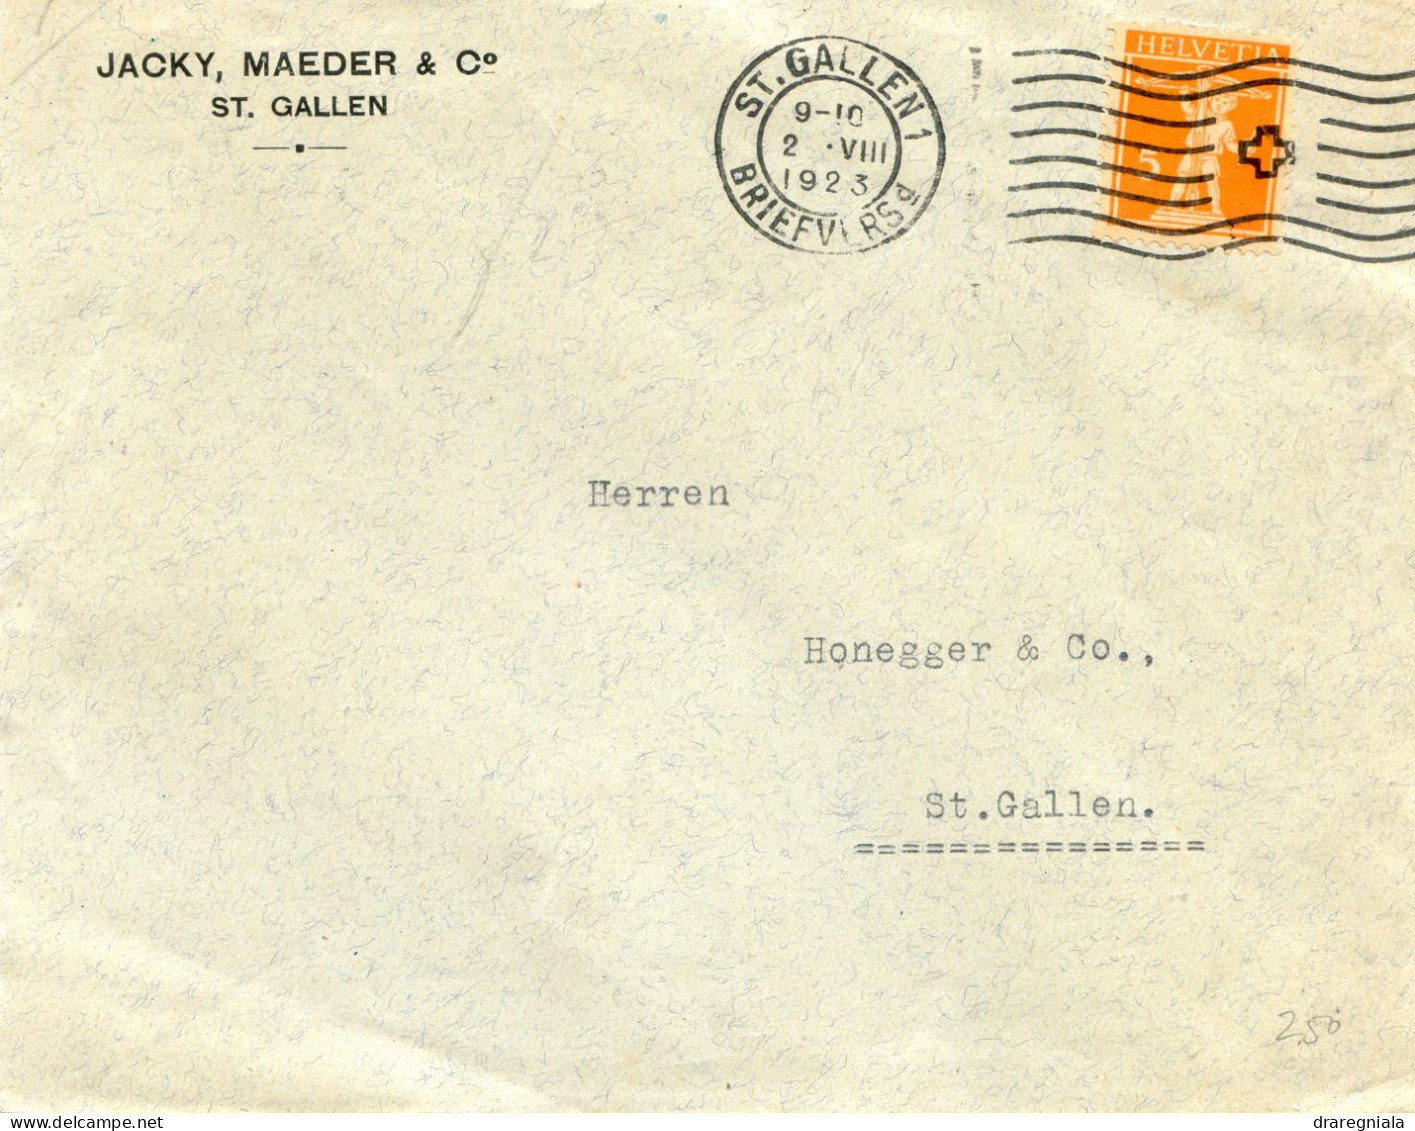 Mail Von St Gallen 1923 - Jacky Maeder & C° -Tellknabe 152 - Poststempel